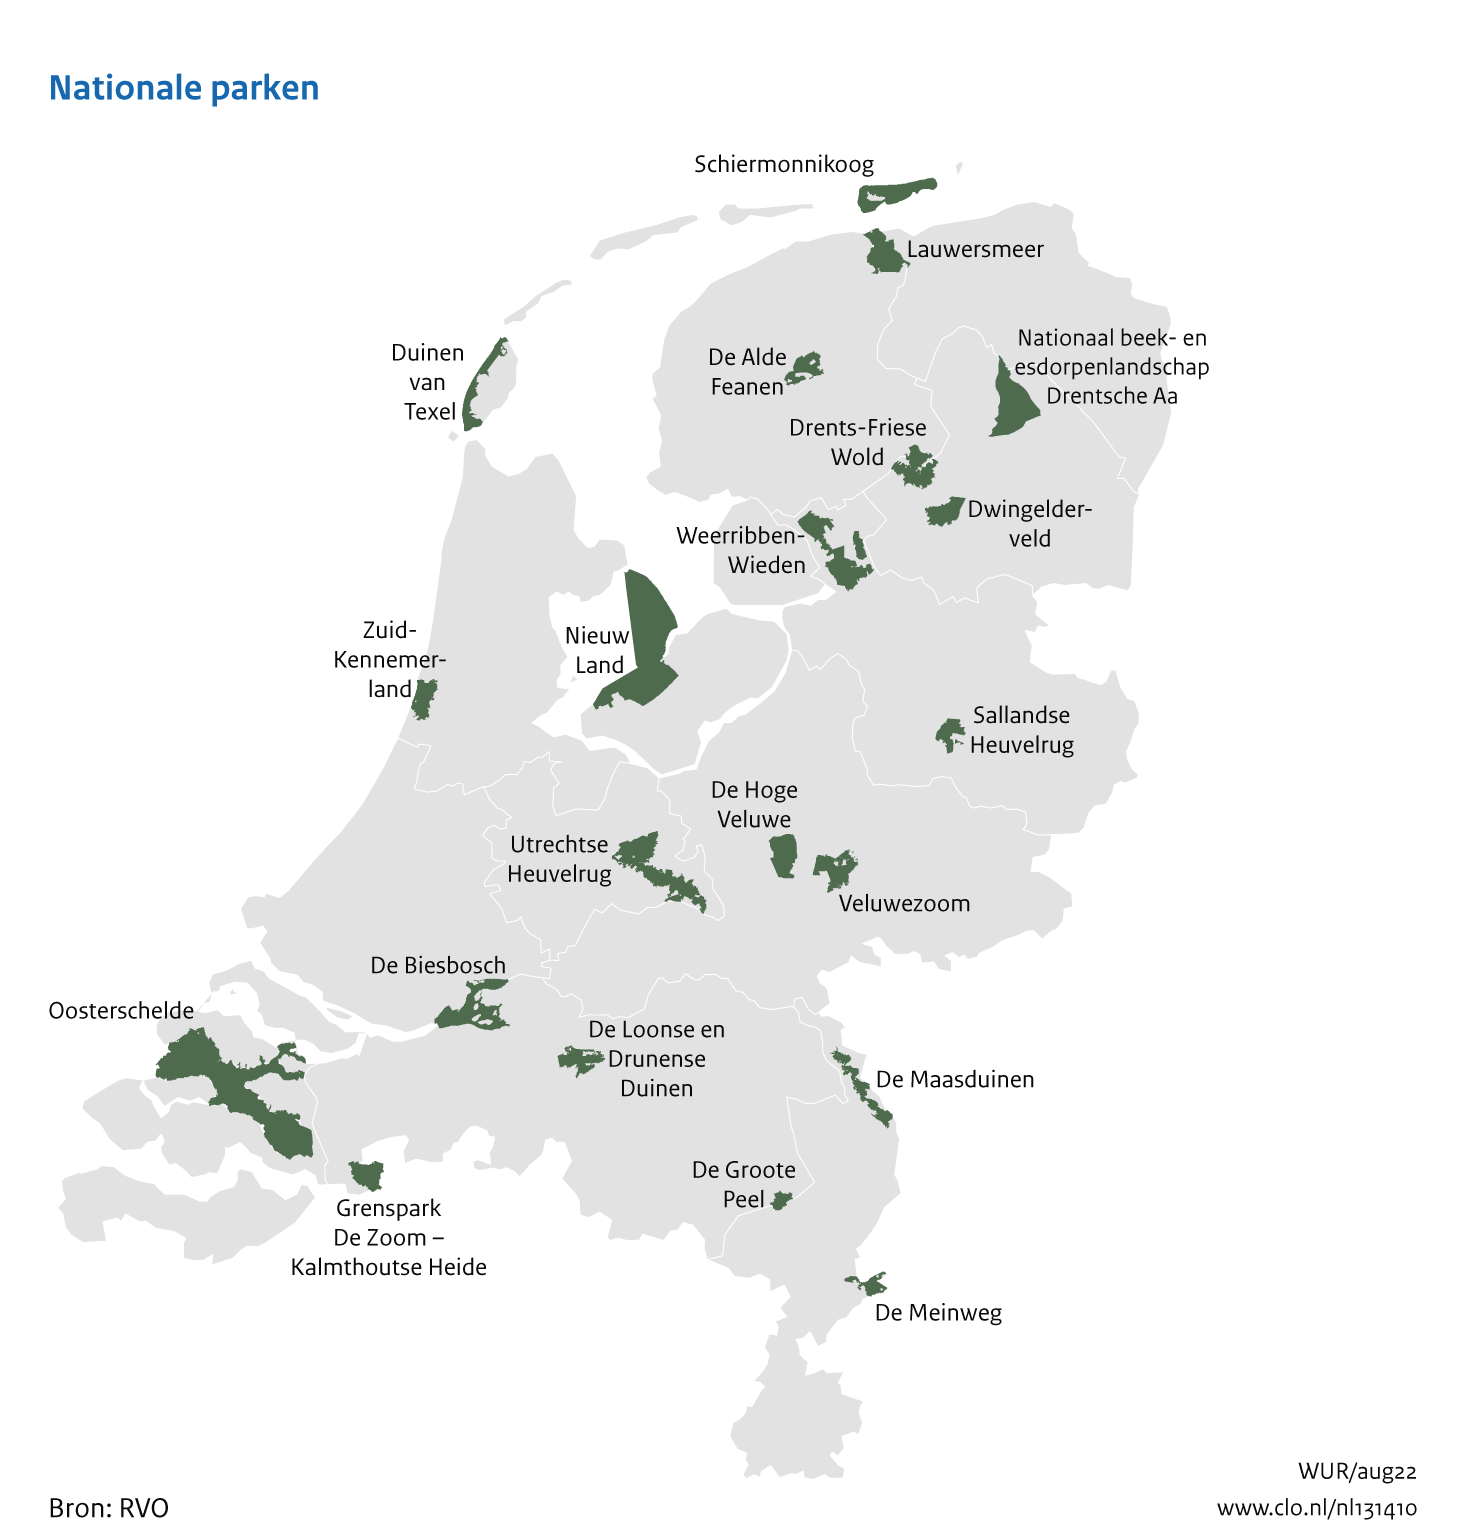 Figuur Kaart van de nationale parken in Nederland. In de rest van de tekst wordt deze figuur uitgebreider uitgelegd.